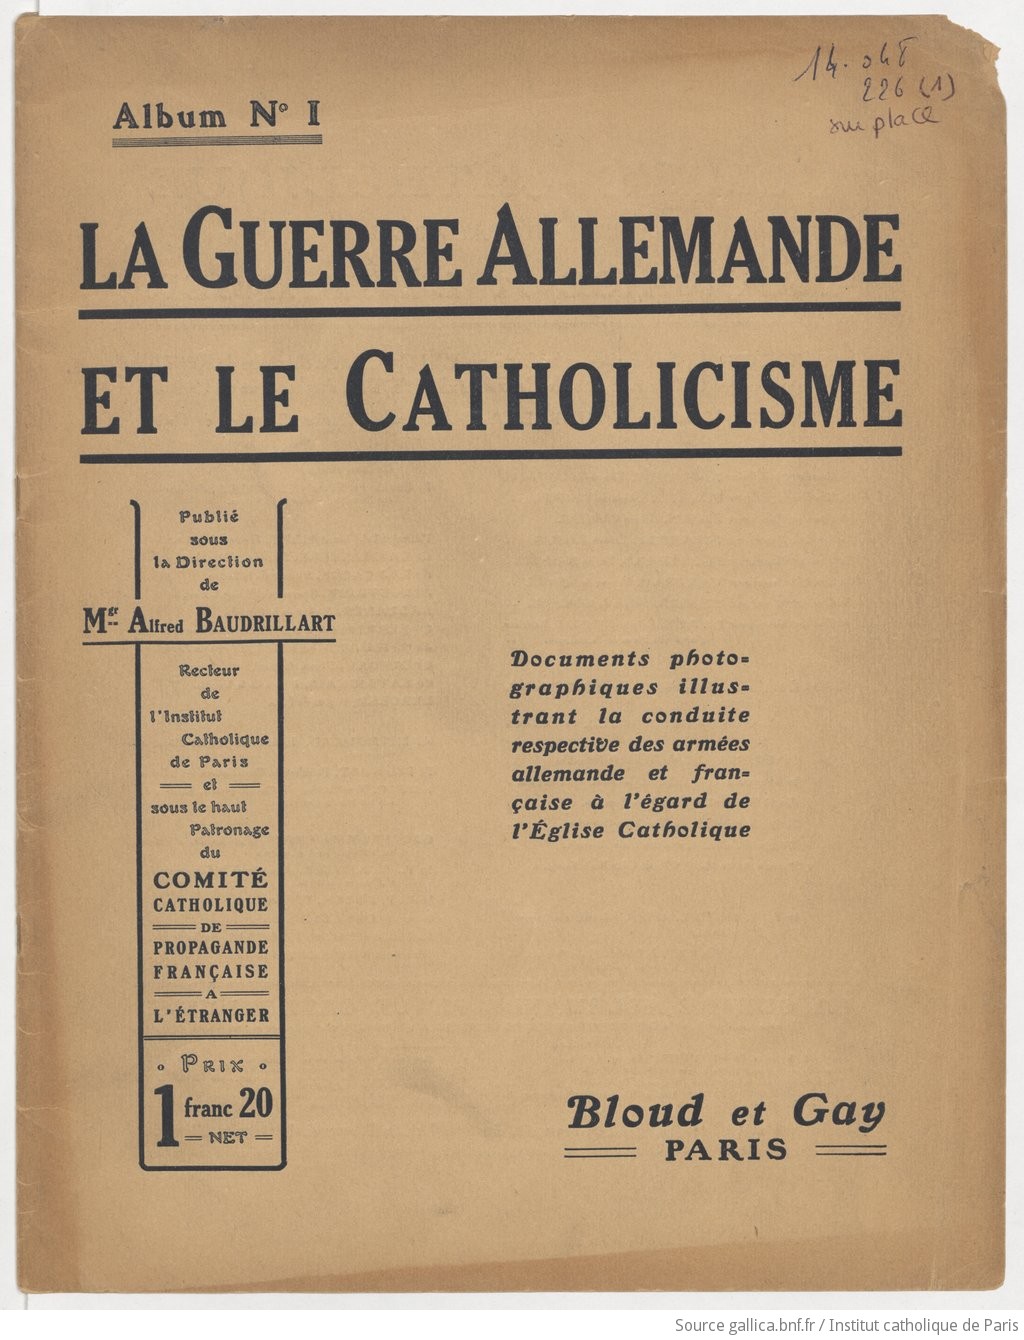 La Guerre allemande et le catholicisme / publ. sous la direction de Mgr Alfred Baudrillart